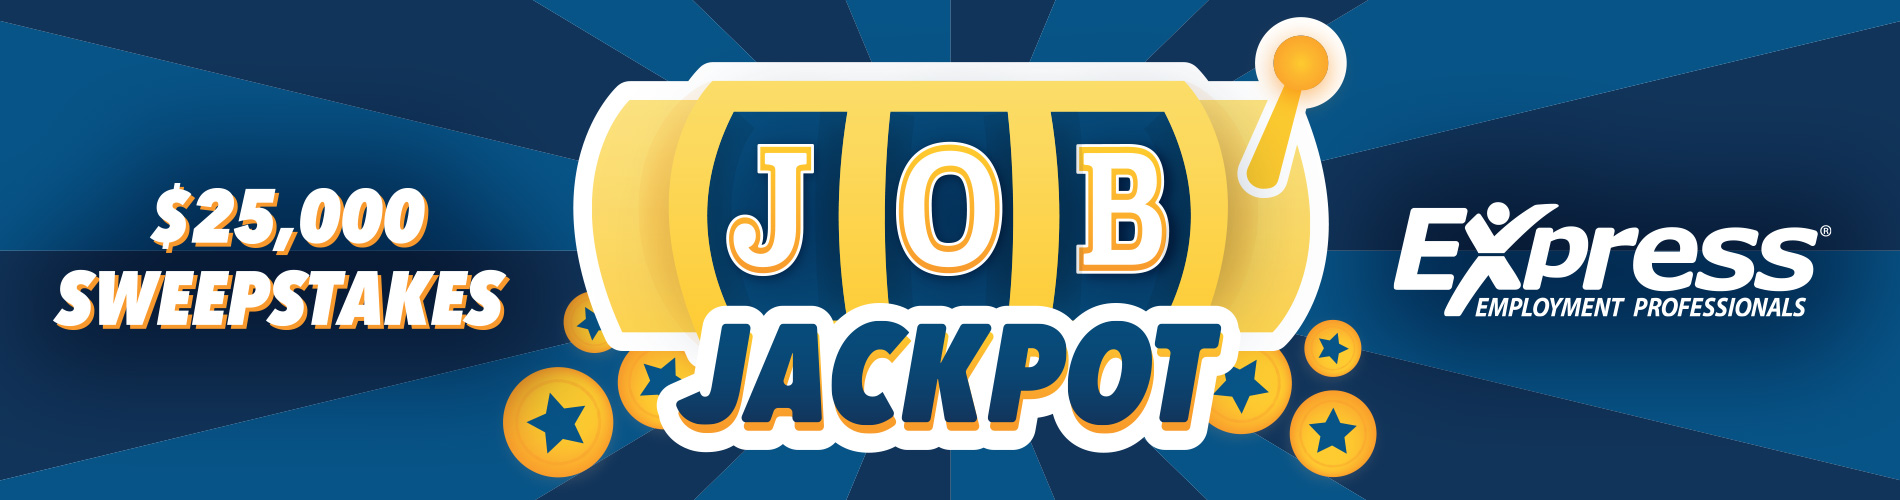 Job Jackpot Banner